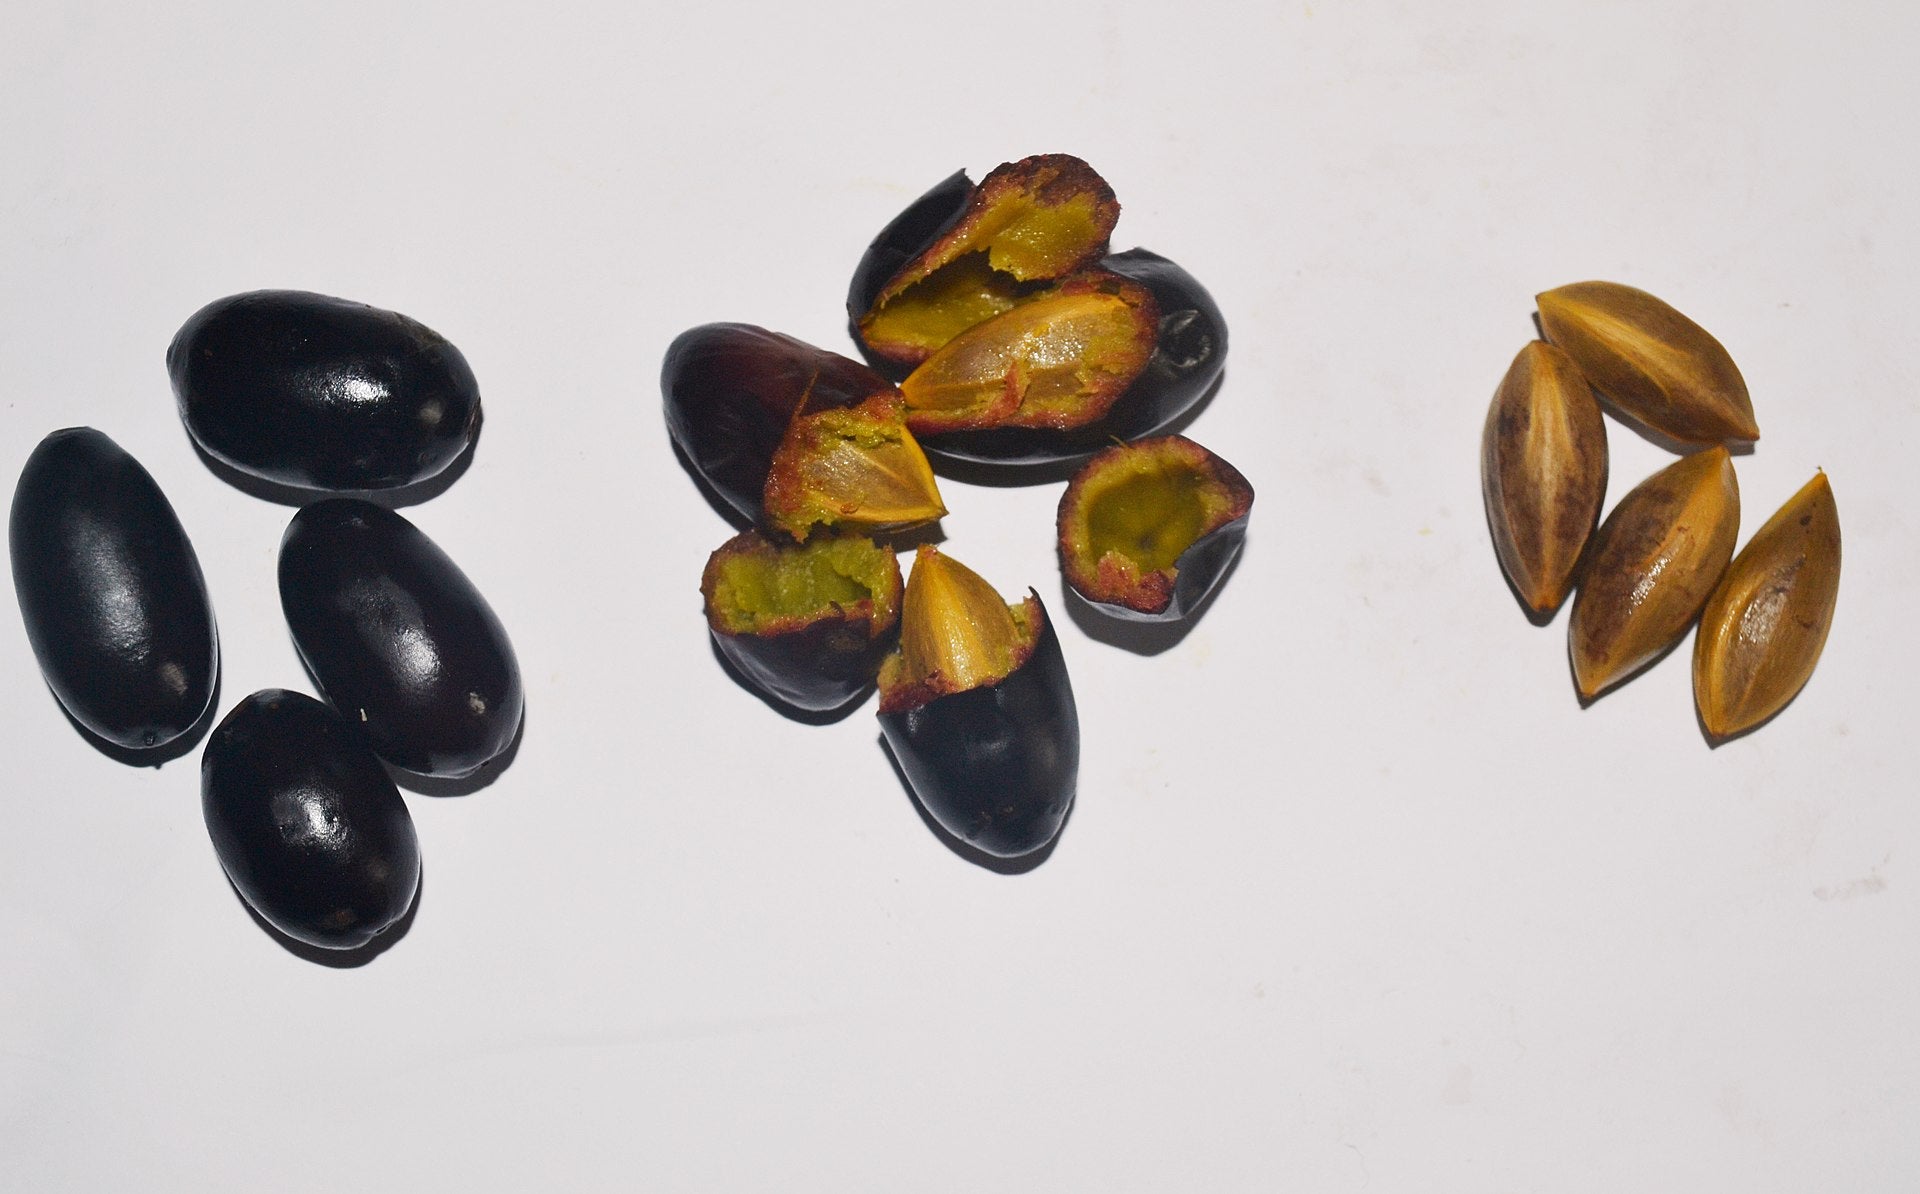 Canarium schwienfuthii (African Olive) Seeds